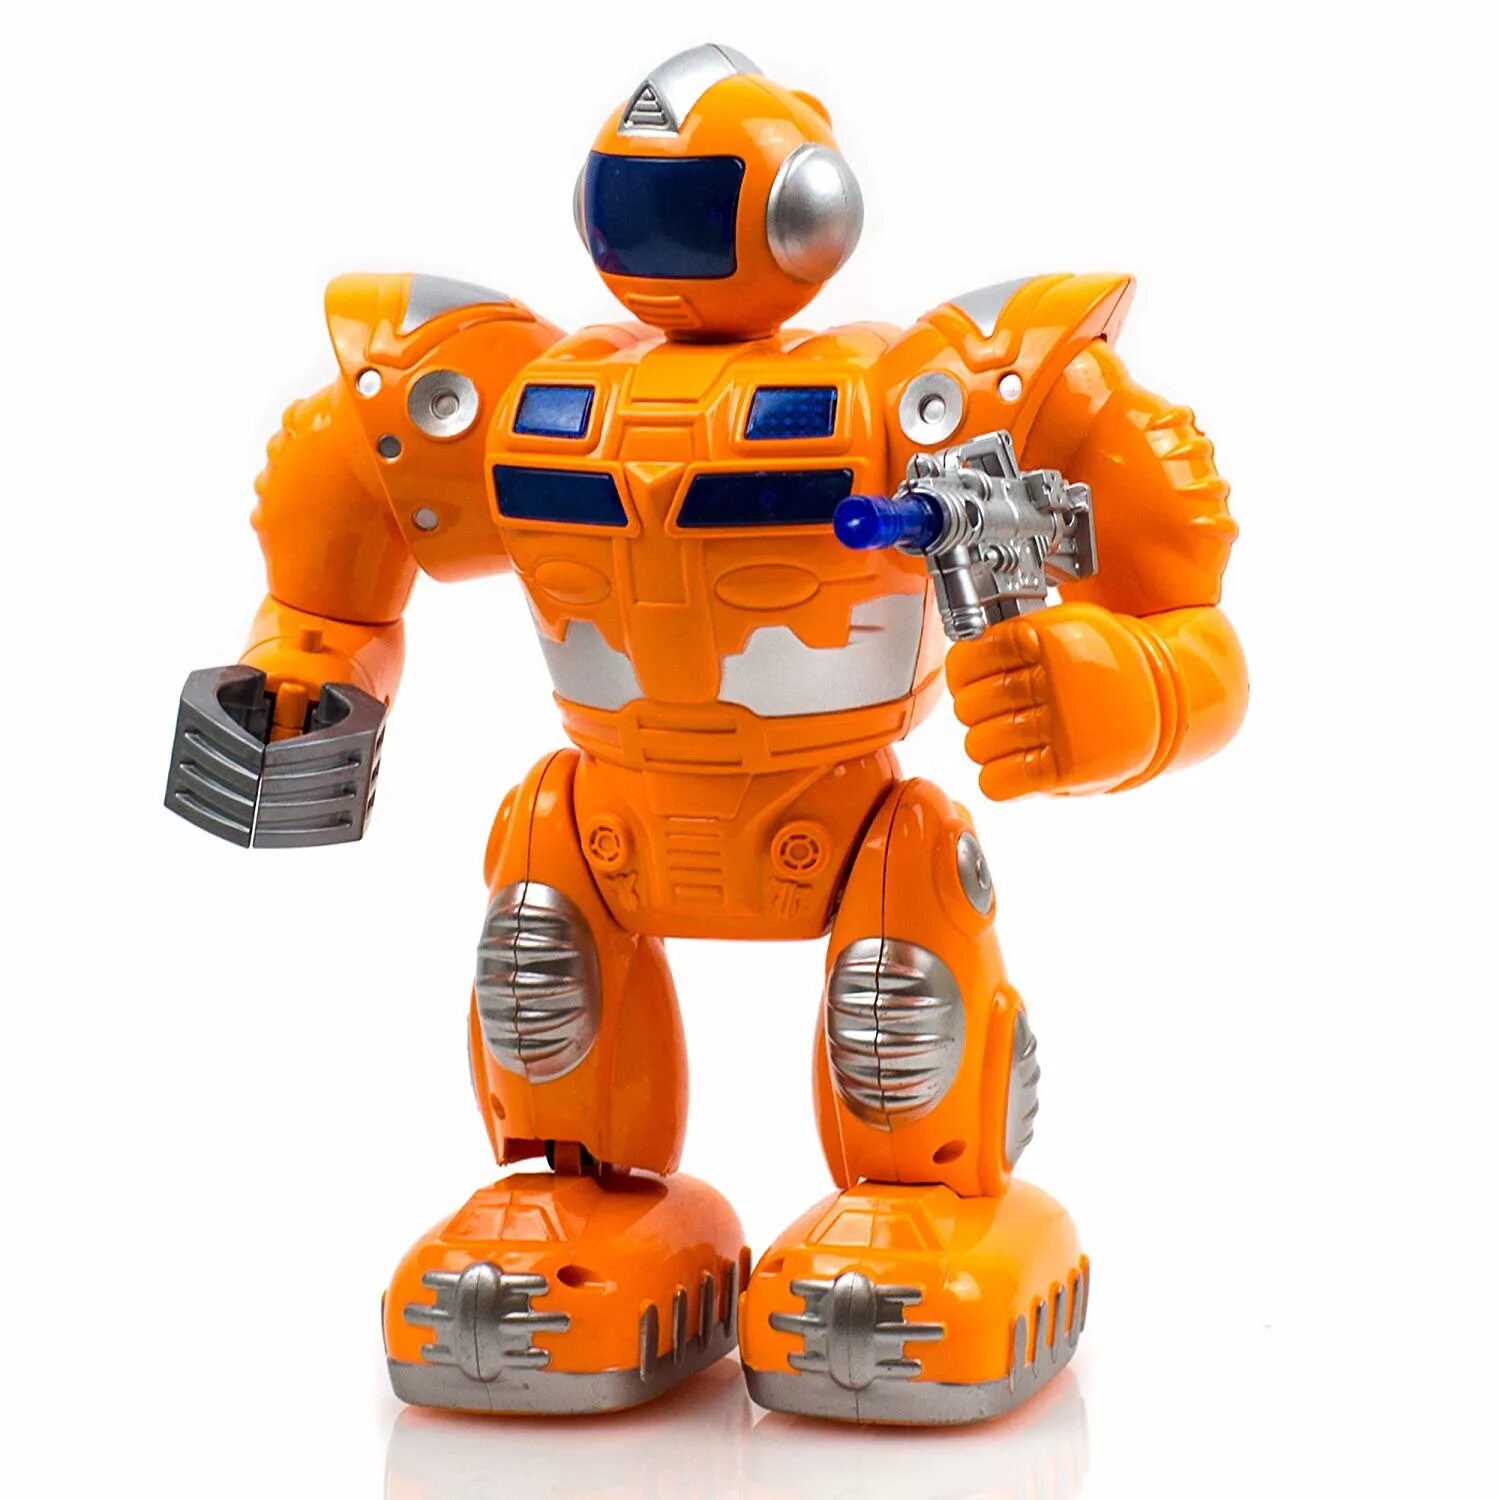 Игрушка робот. Тоботы игрушки. Робот игрушечный. Робот оранжевый игрушка.